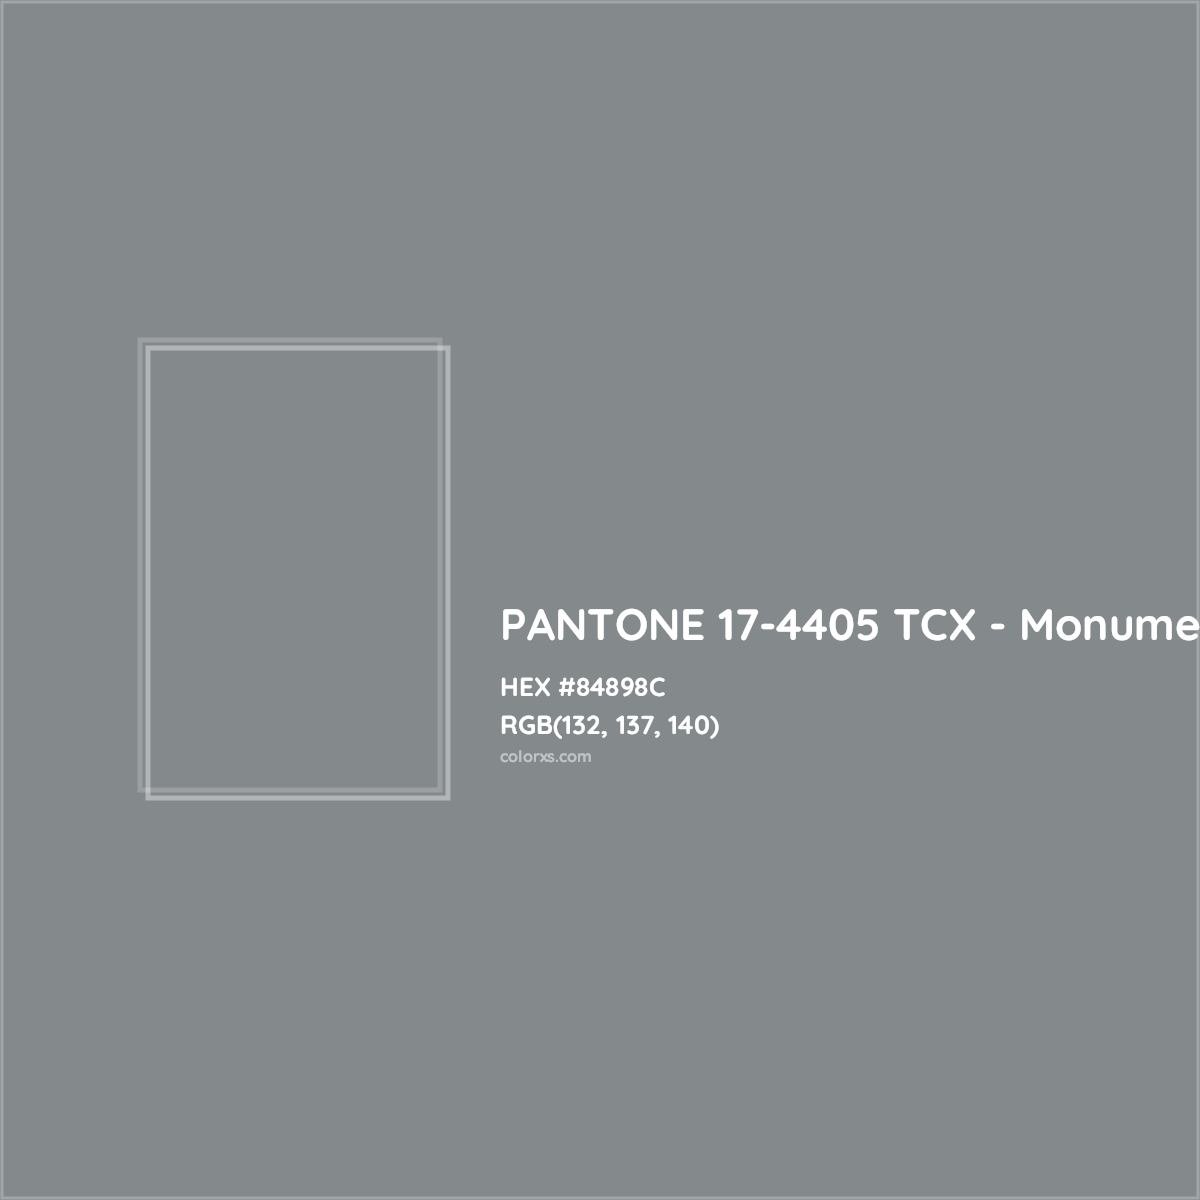 HEX #84898C PANTONE 17-4405 TCX - Monument CMS Pantone TCX - Color Code